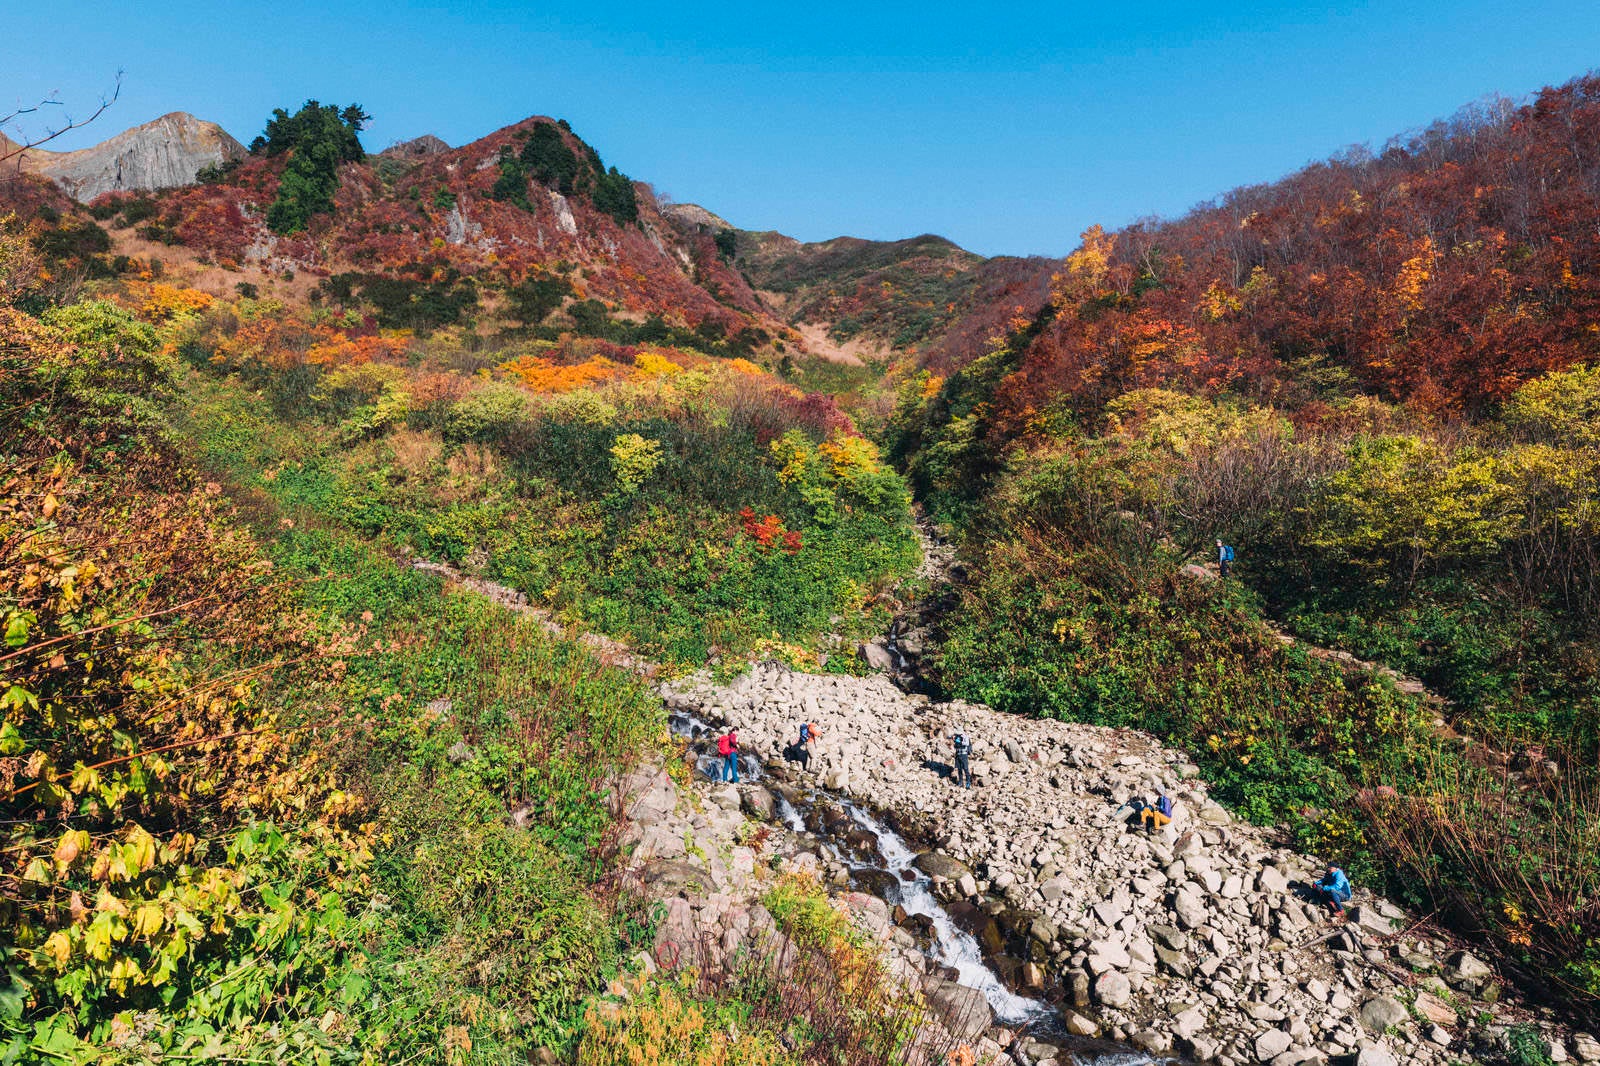 「荒菅沢から見る紅葉の山腹」の写真